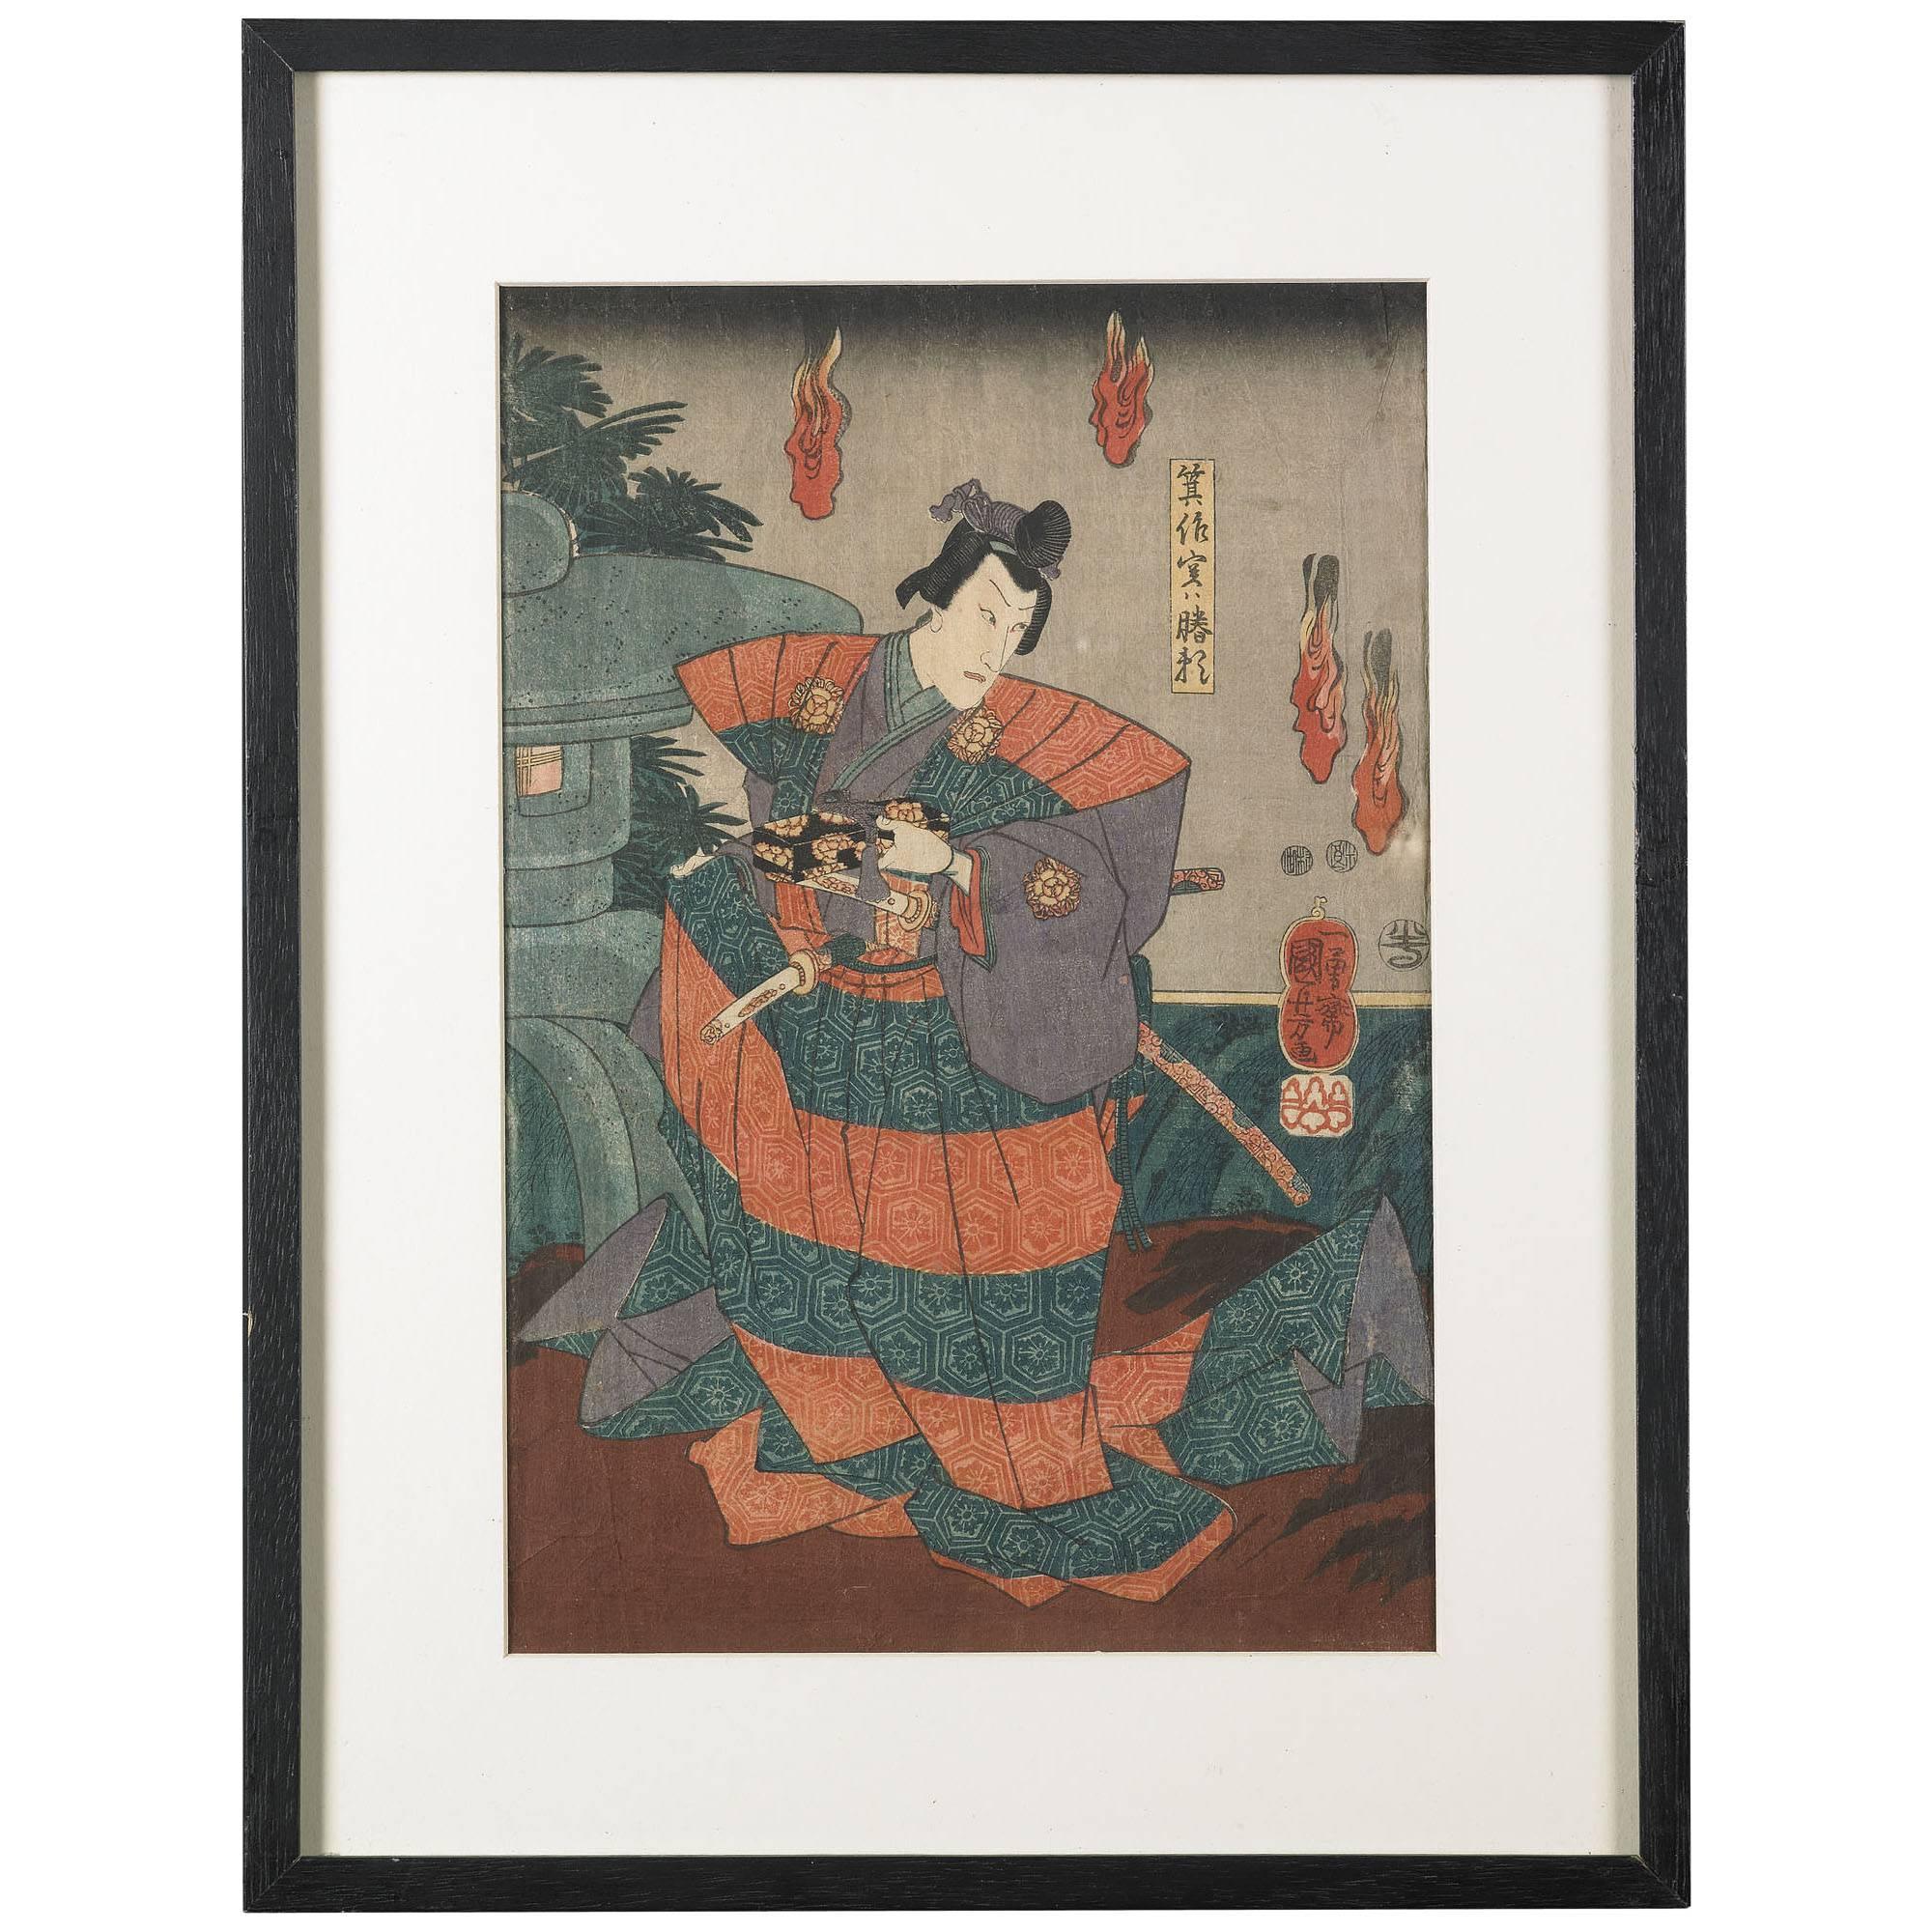 Utagawa Kunisada 'Toyokuni III' Ukiyo-e Print, Edo Period